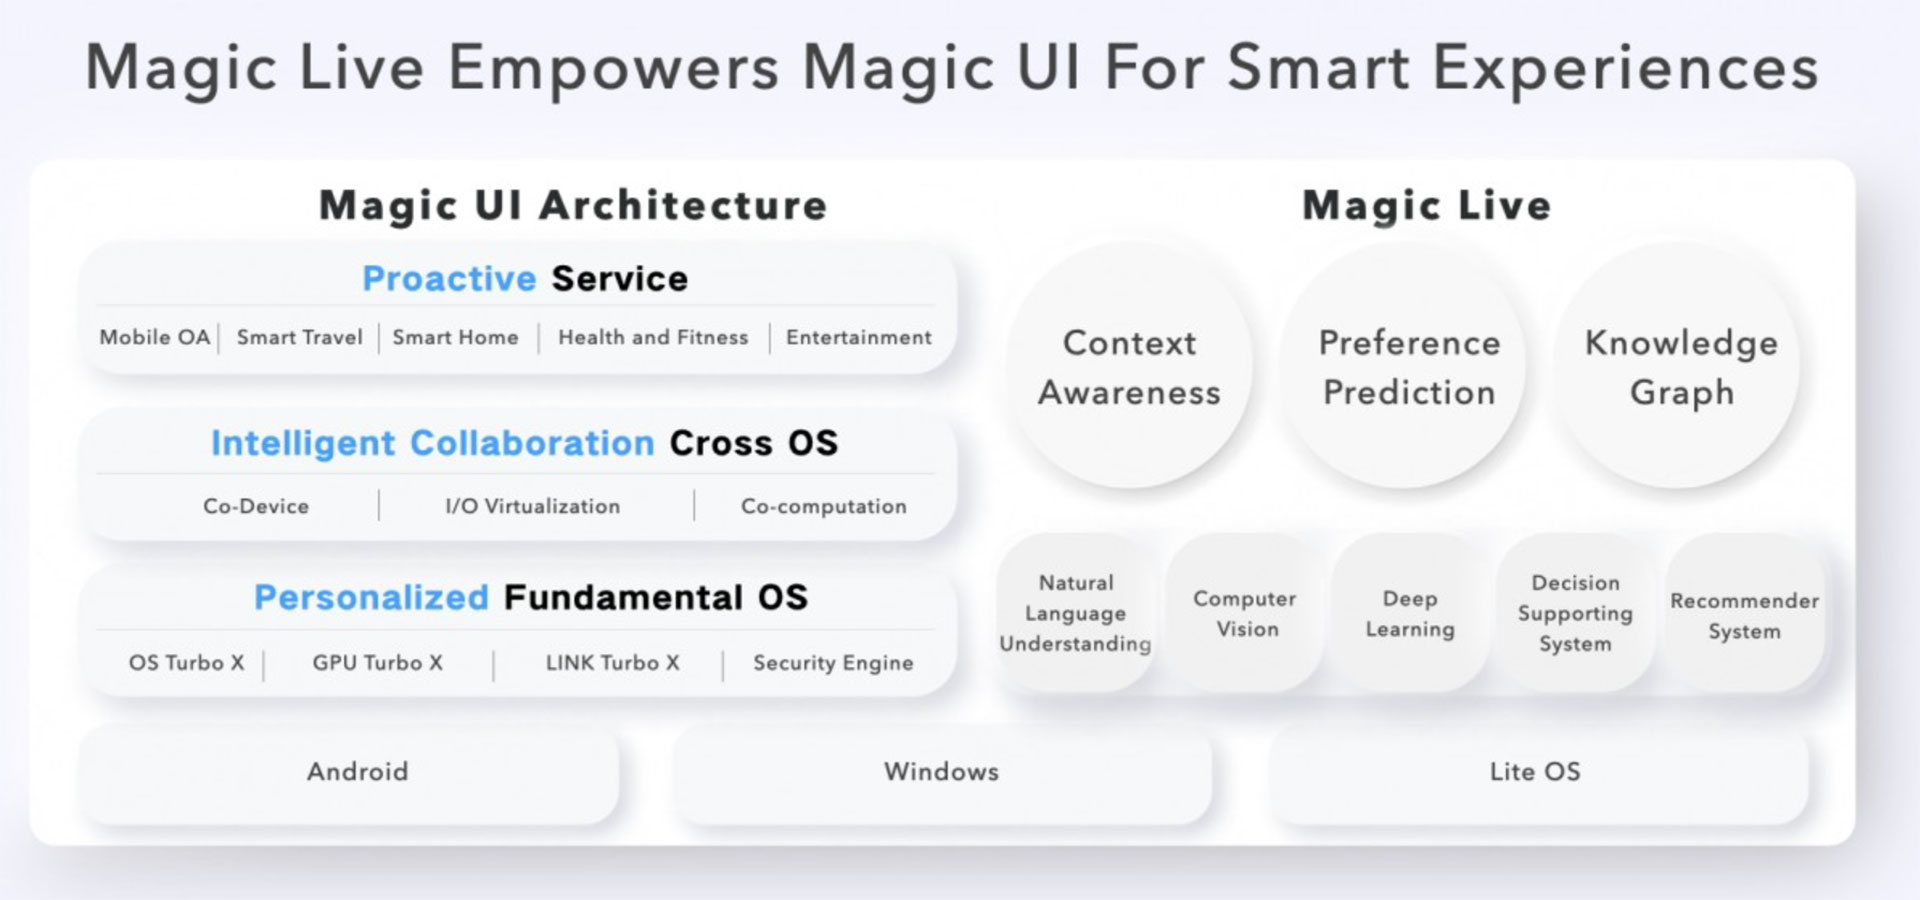 رابط کاربری Magic UI 6.0